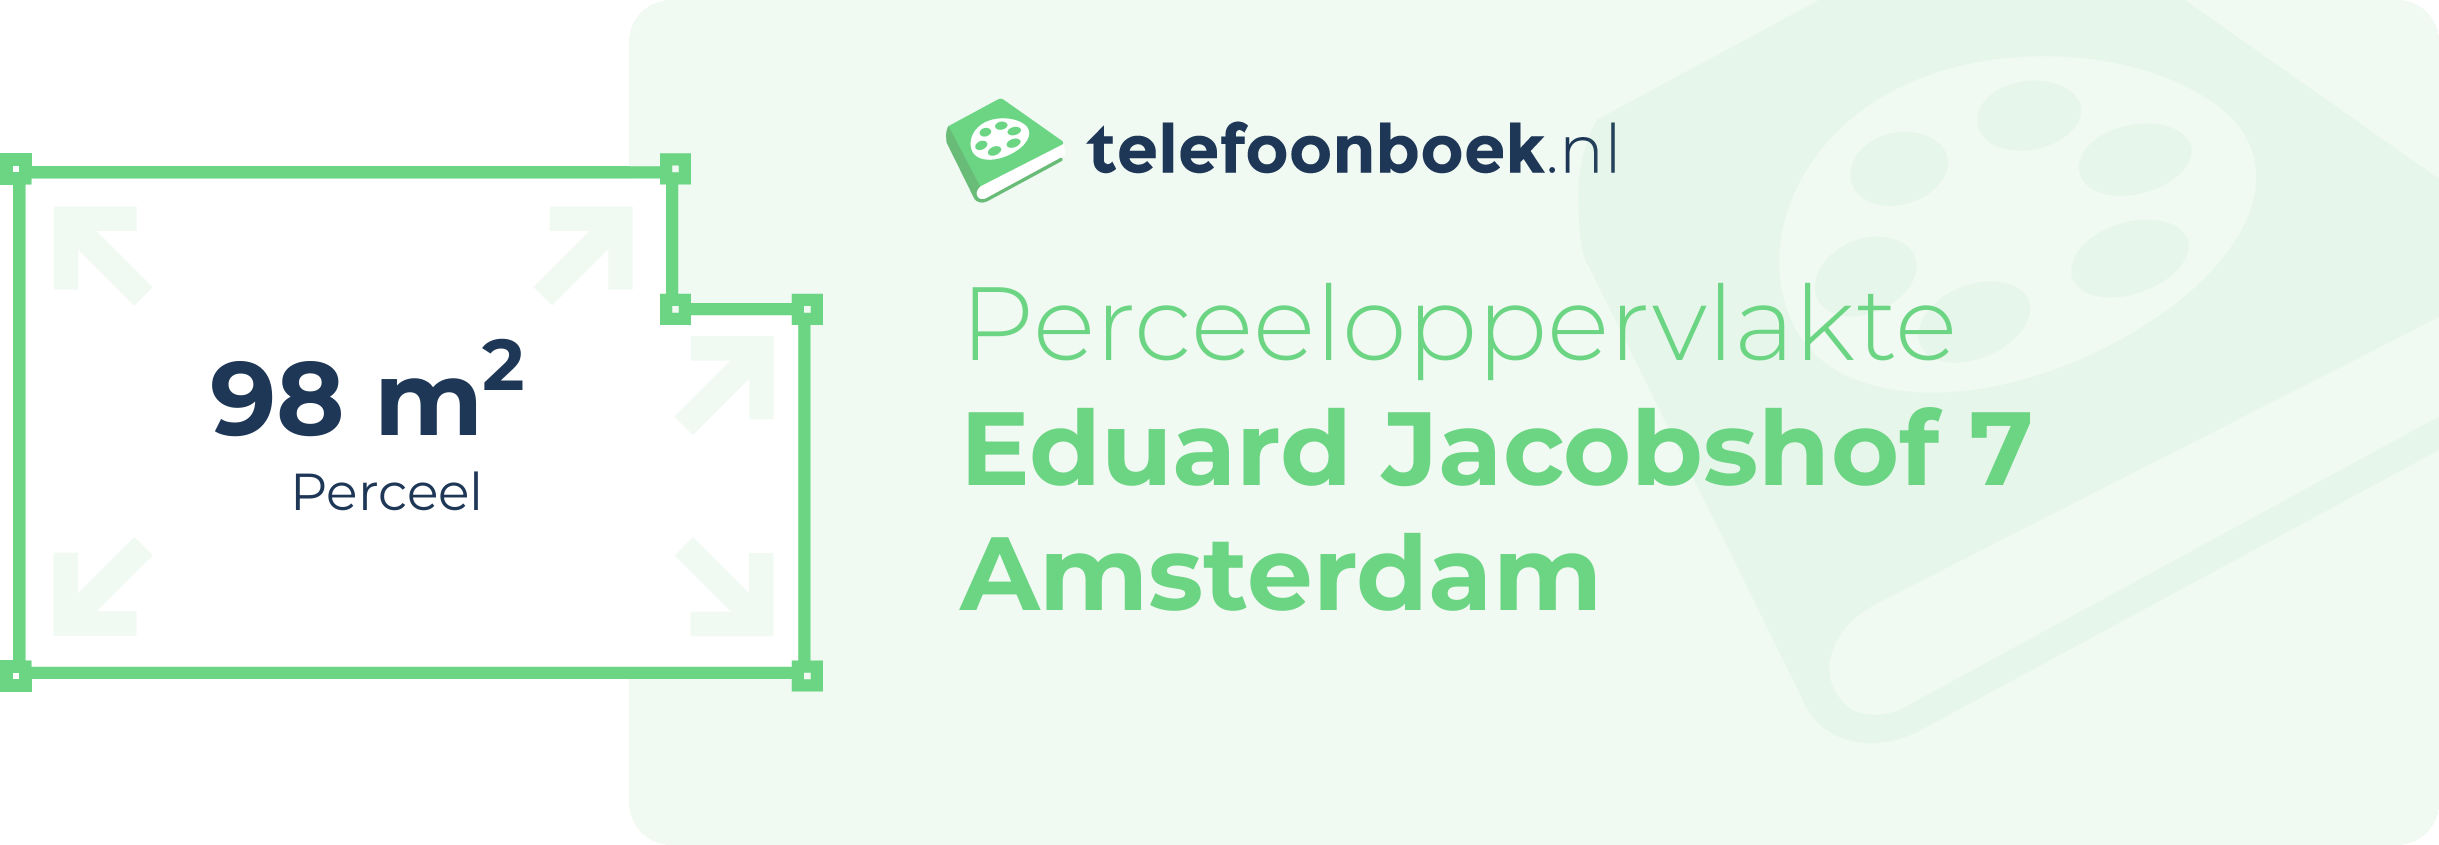 Perceeloppervlakte Eduard Jacobshof 7 Amsterdam